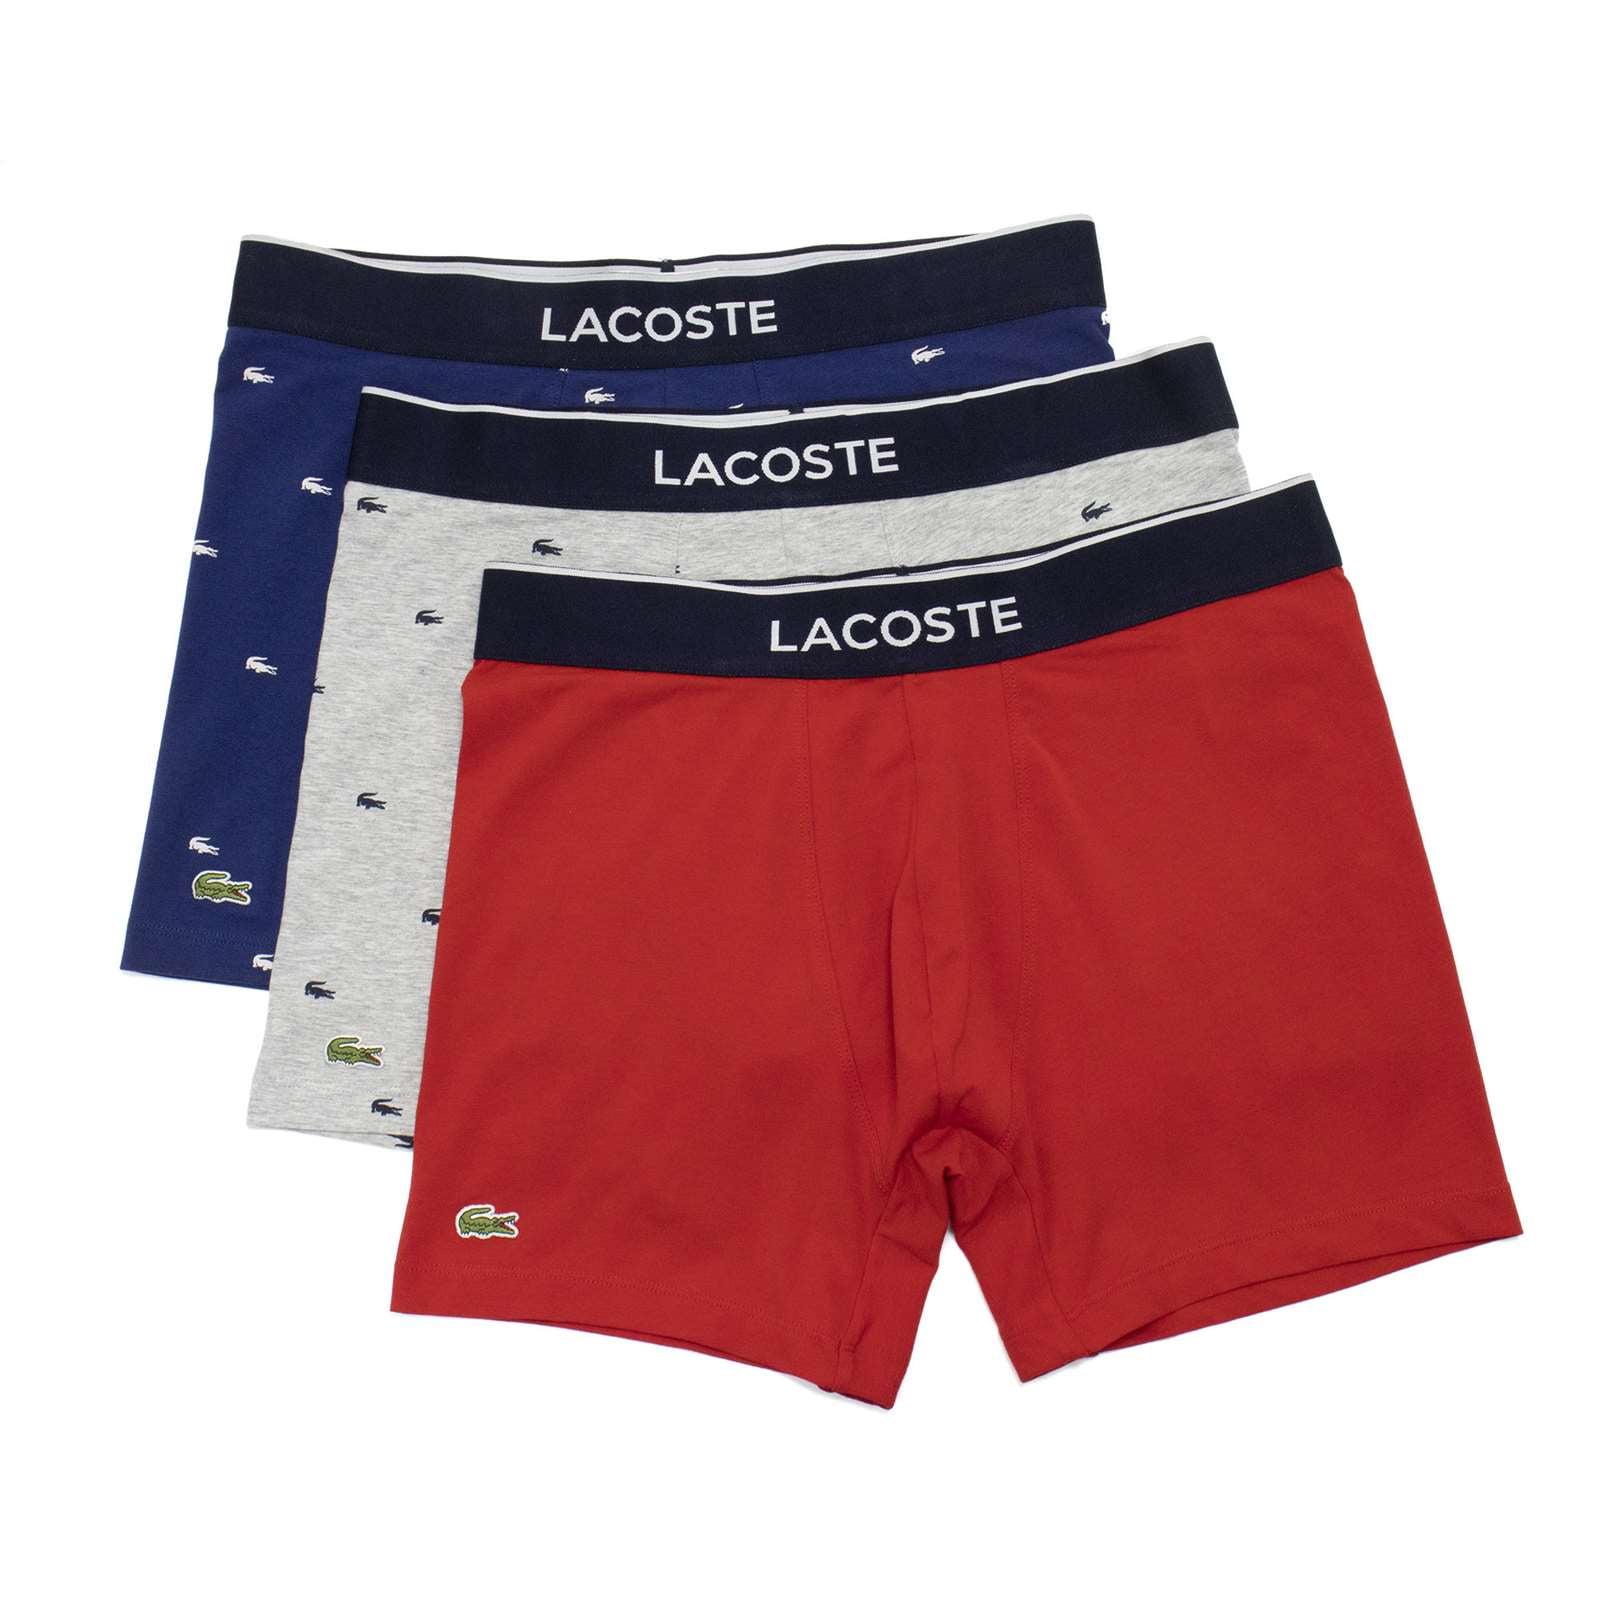 Lacoste Men's Allover Croc 3 Pack Cotton Stretch Briefs, Methylene \ Chine,2XL - US - Walmart.com